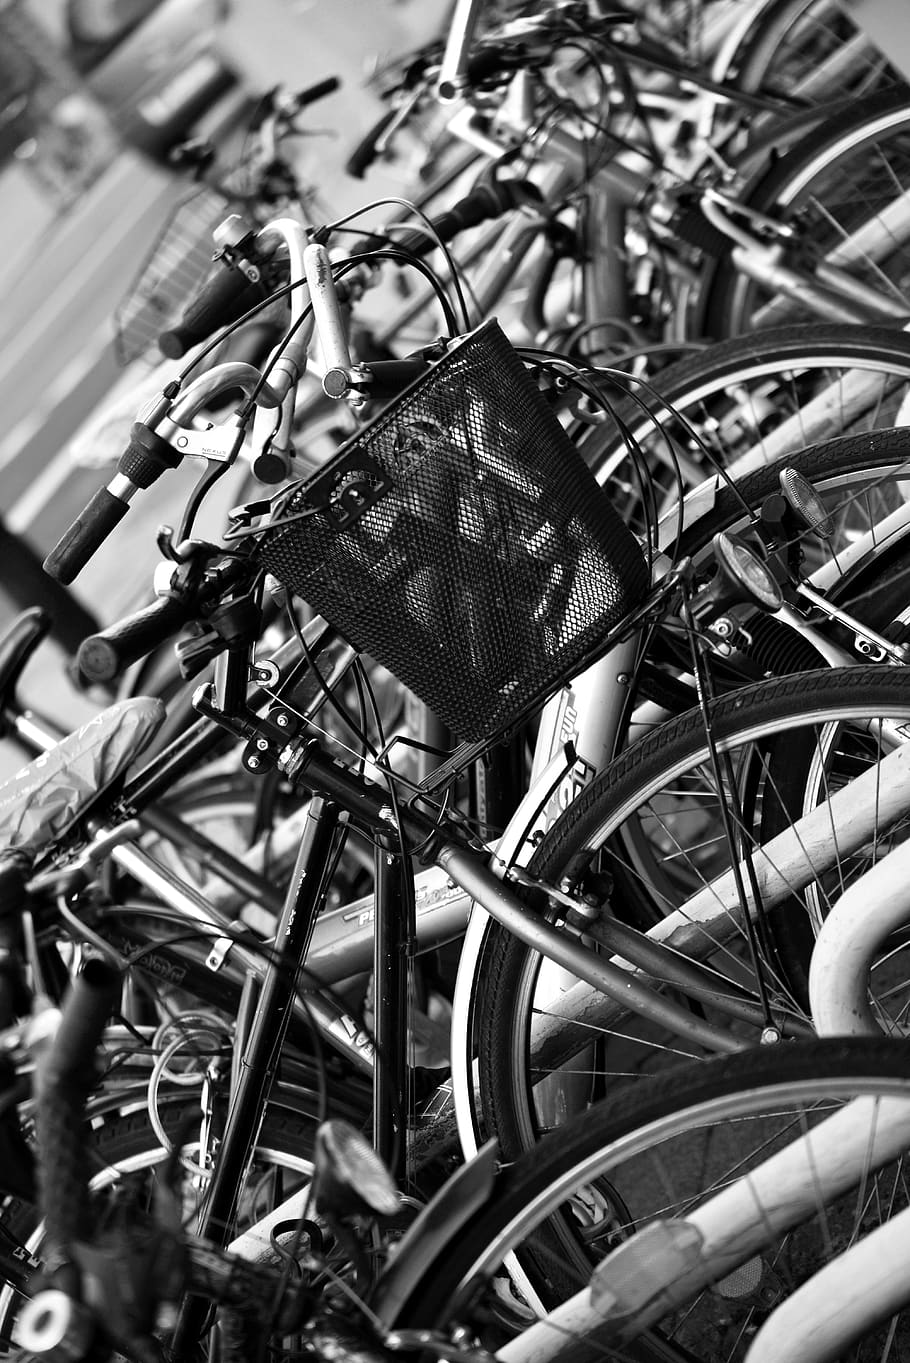 bicicletas, cesta de bicicletas, centro da cidade, parque, bicicletários, muitos, rodas, guidão, preto branco, bicicleta